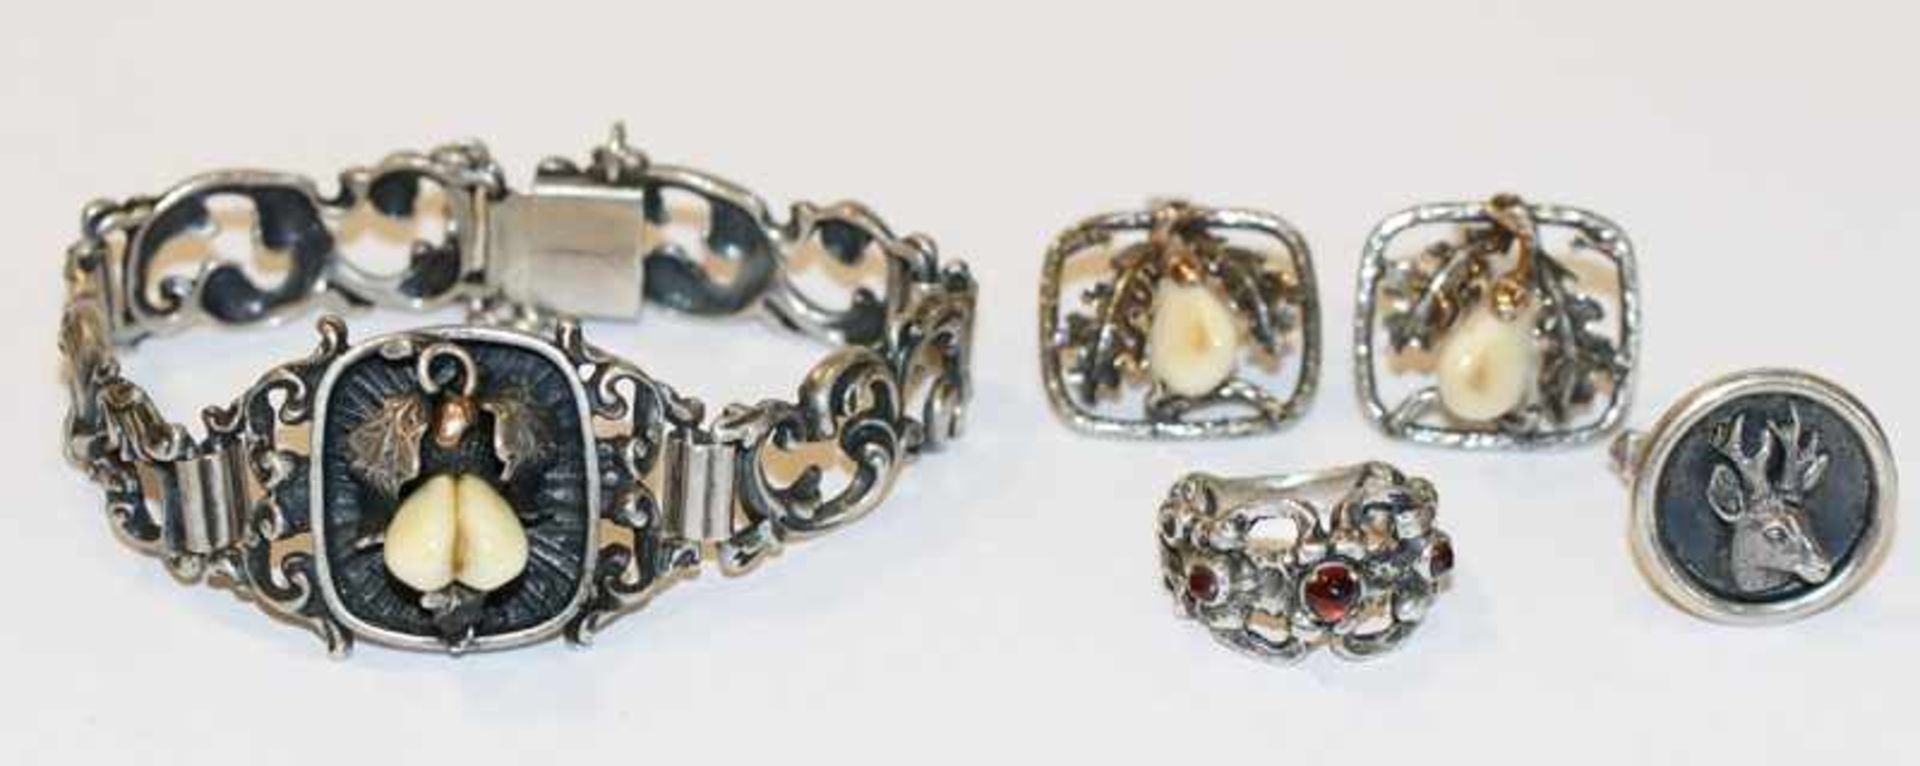 Silber Trachten-Schmuck: Armband mit Grandeln, L 16 cm, Paar Manschettenknöpfe mit Grandeln und